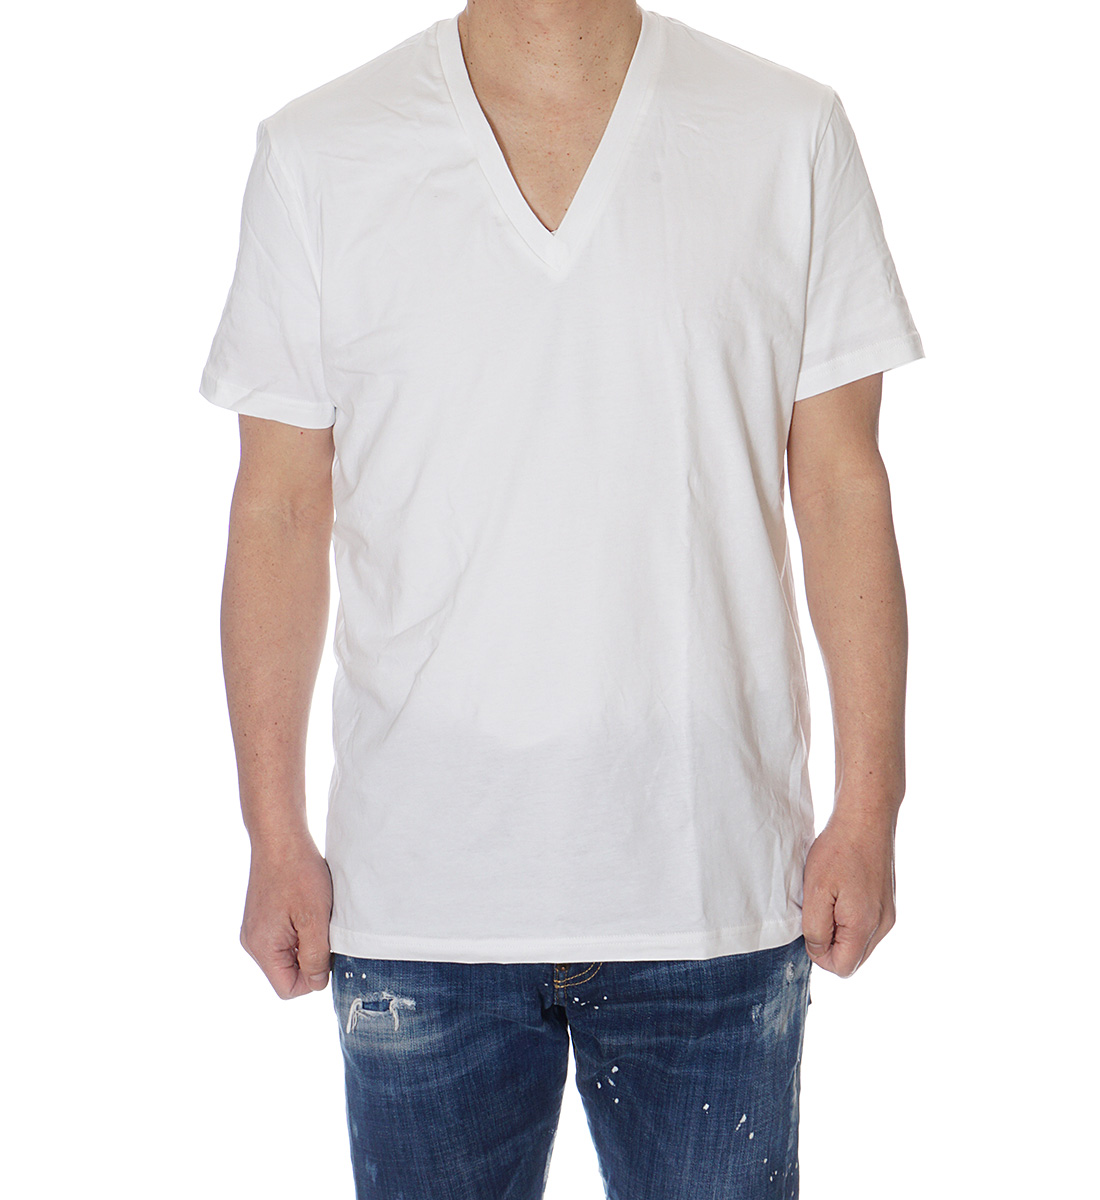 ディースクエアード DSQUARED2 UNDER WEARライン Vネック Tシャツ メンズ ブラ...